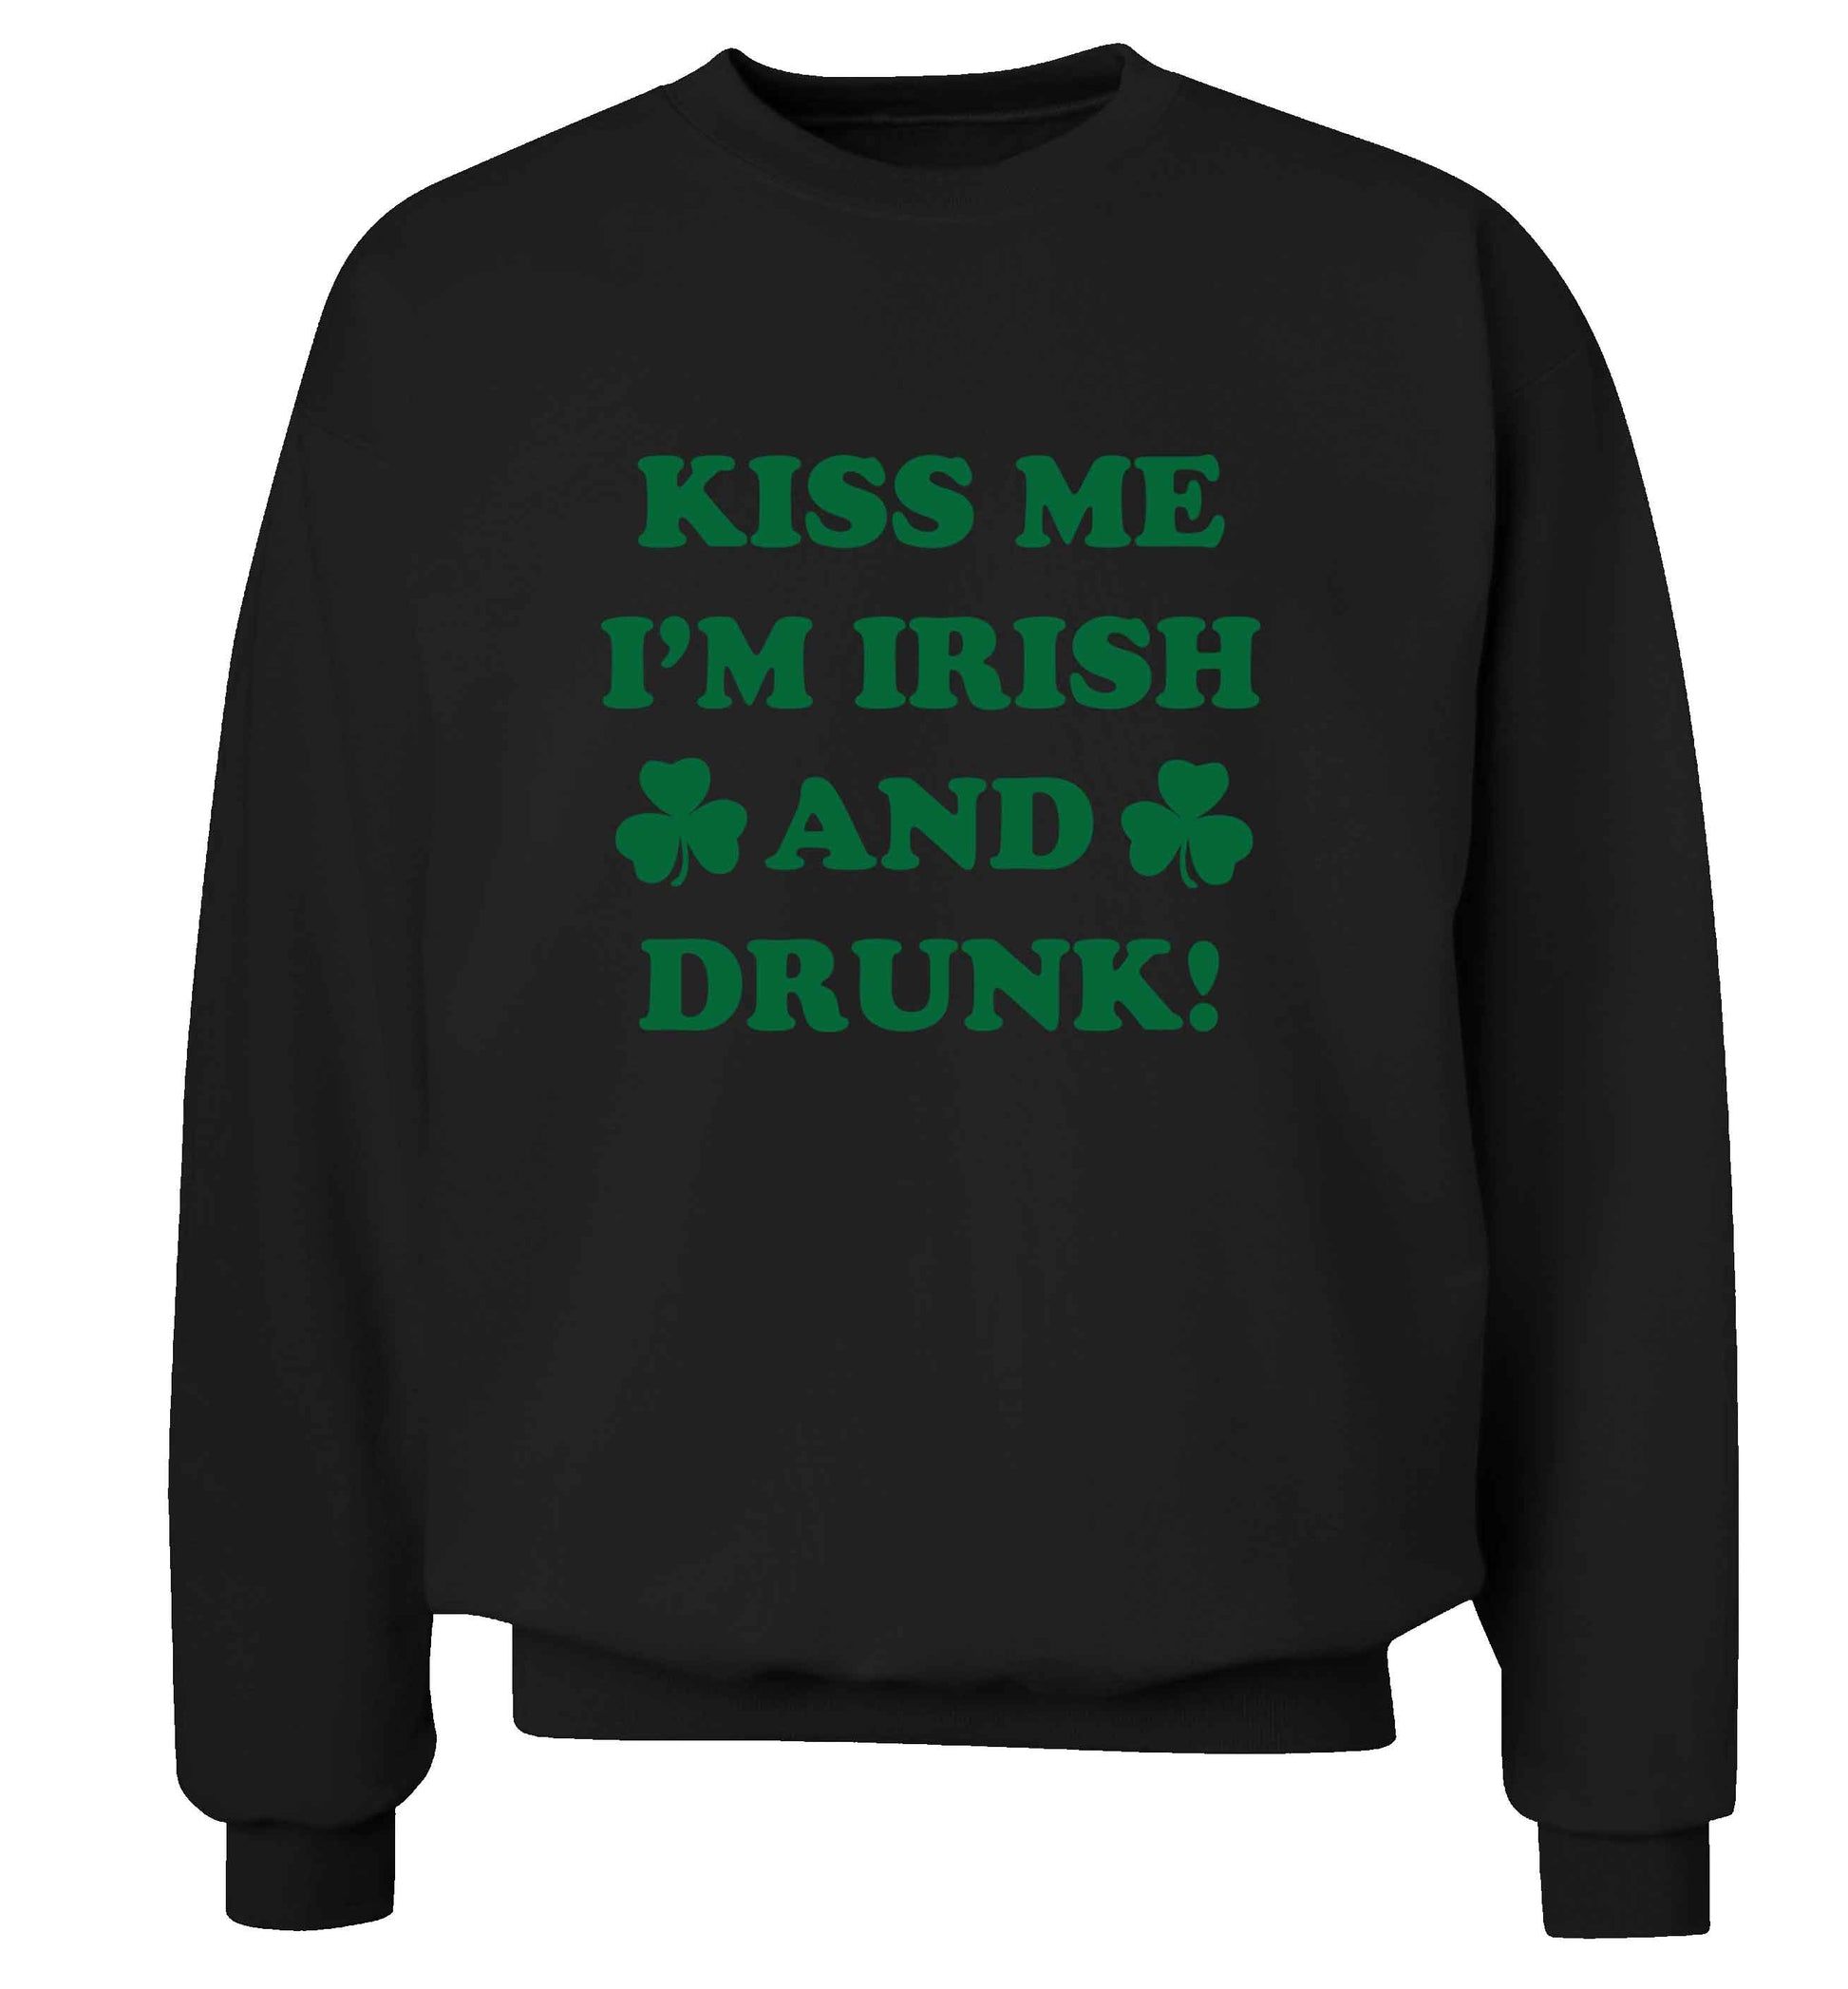 Kiss me I'm Irish and drunk adult's unisex black sweater 2XL